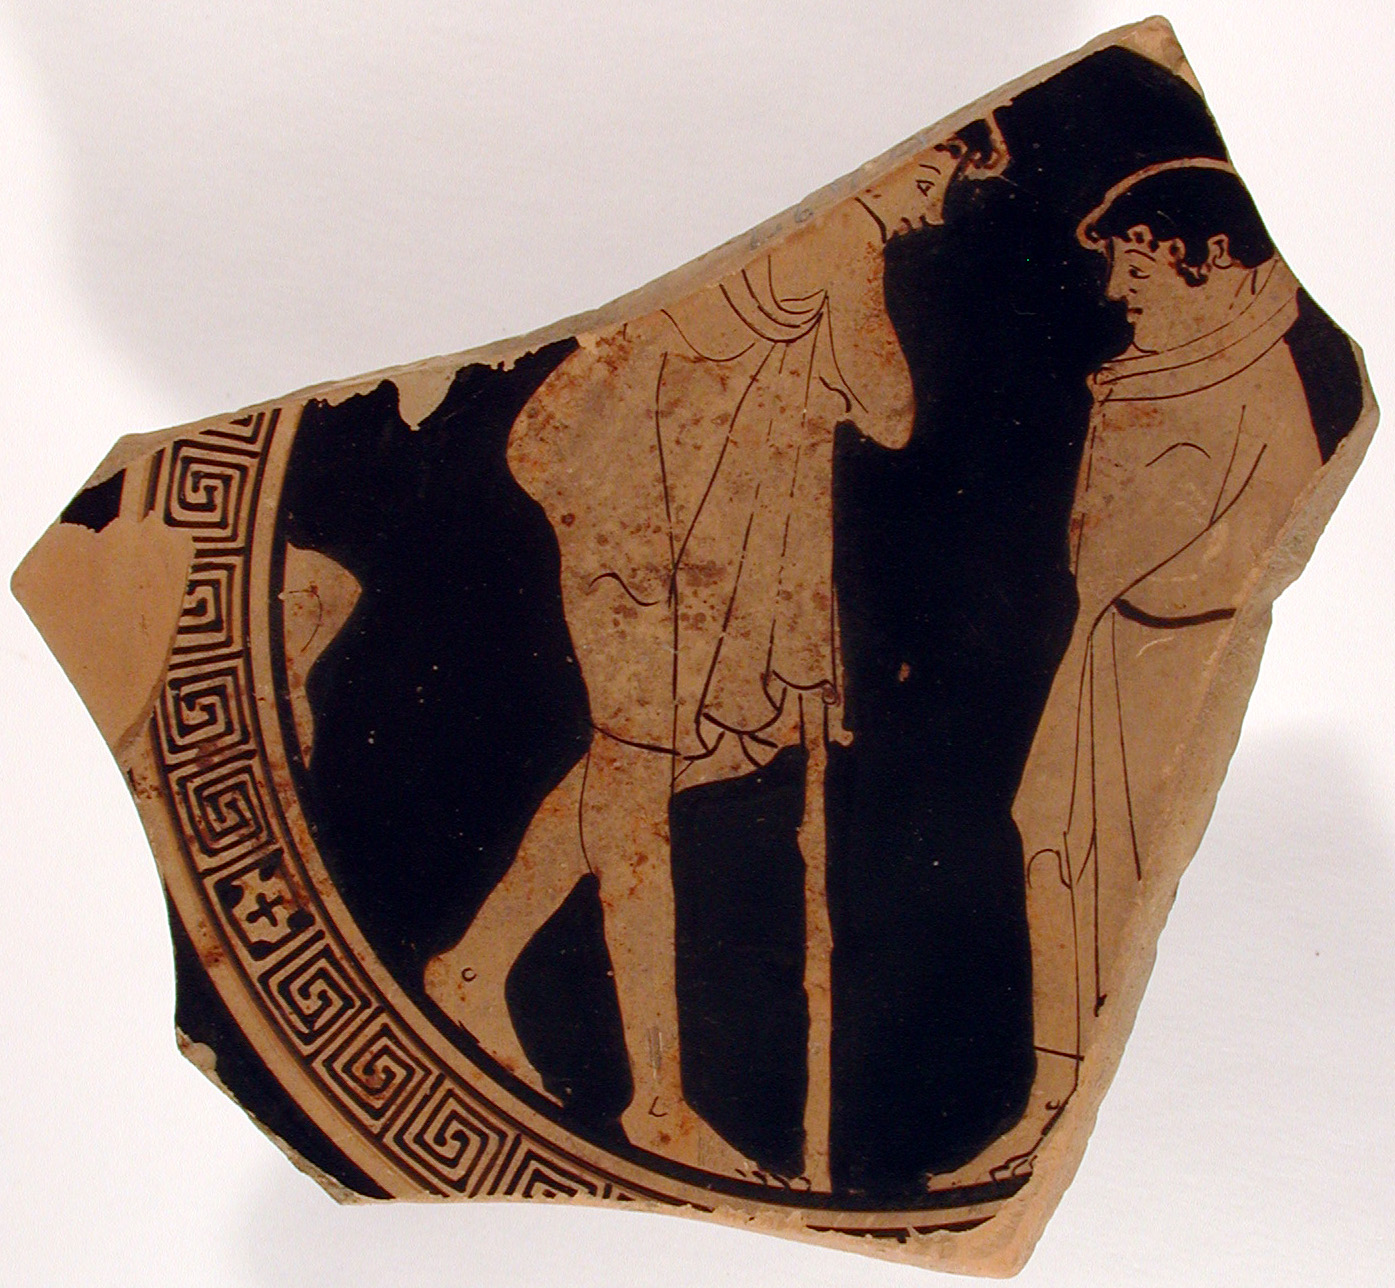 due giovani figure maschili panneggiate (kylix, tipo B o C) di Pittore di Splanchnoptes (attribuito) - produzione attica (secondo quarto V sec. a.C)